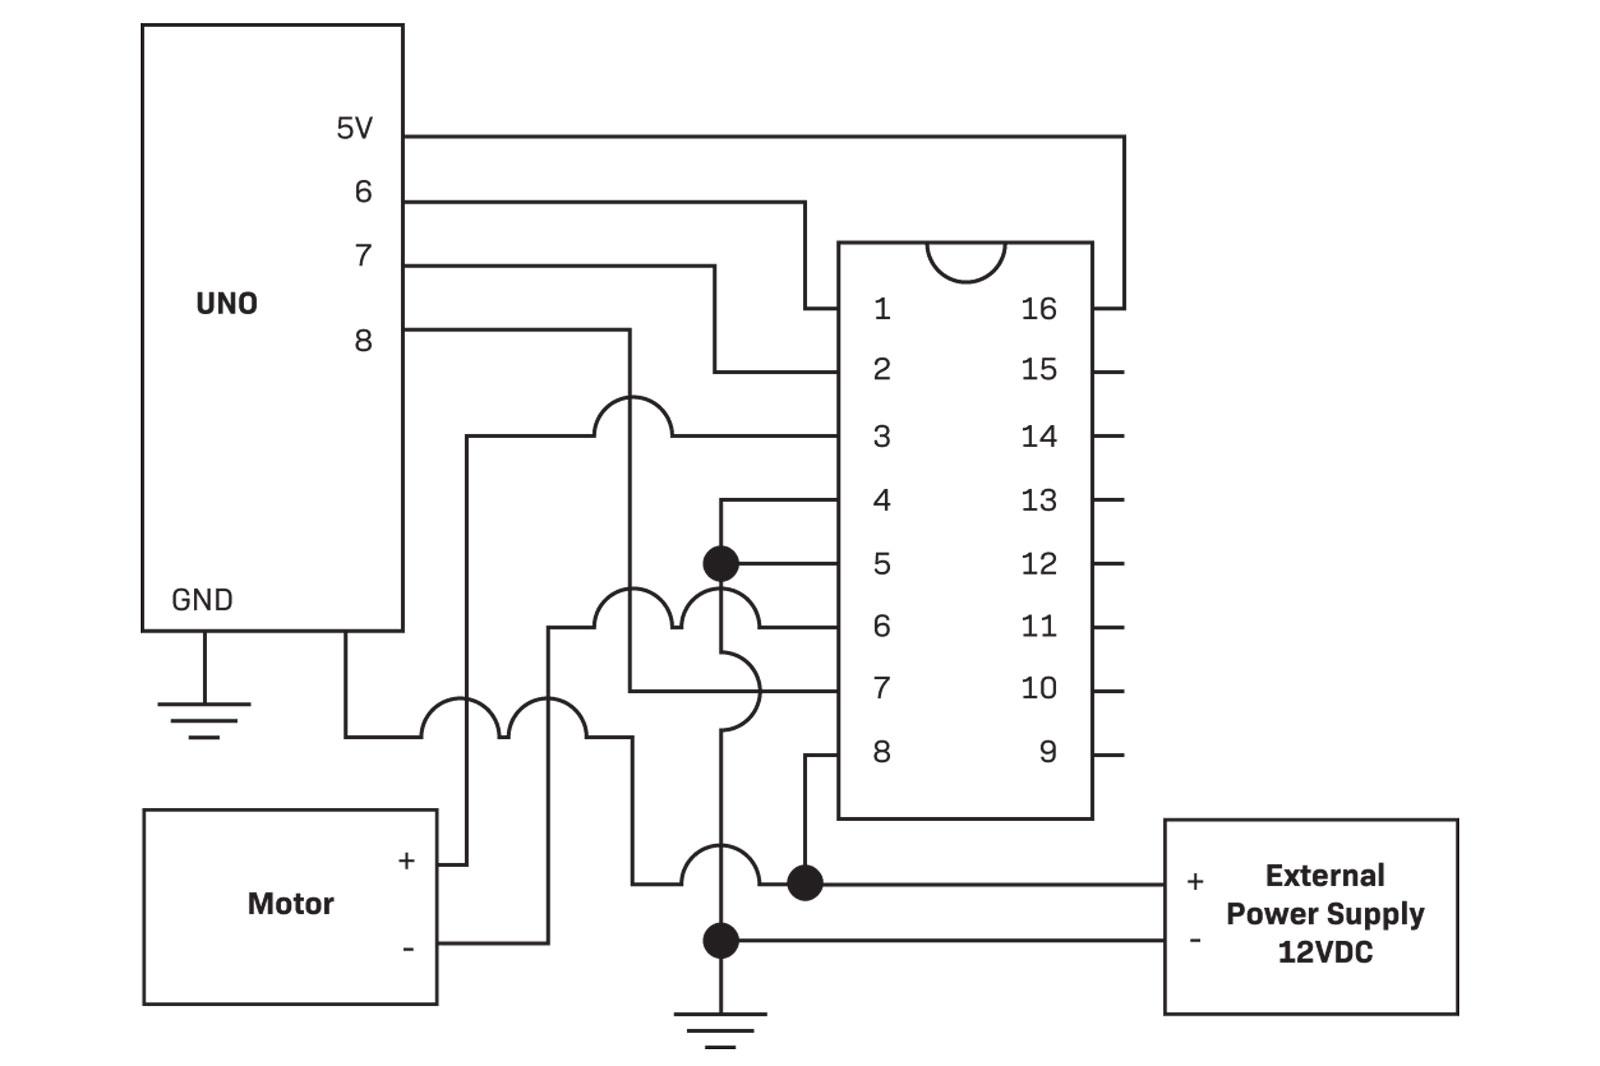 fig 6 schematic